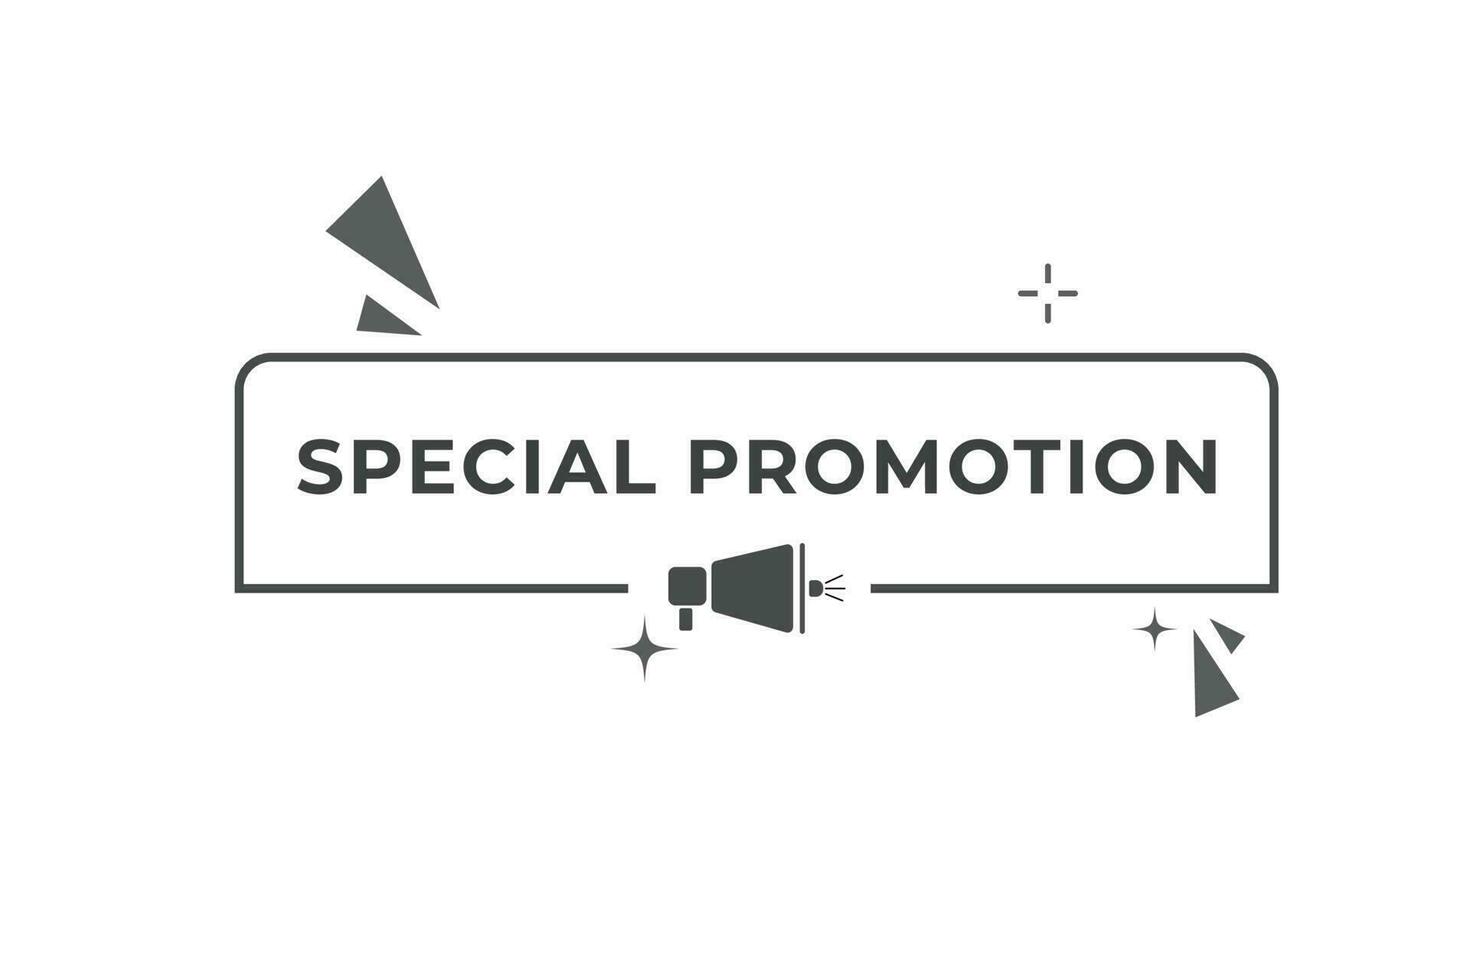 spécial promotion bouton. discours bulle, bannière étiquette spécial promotion vecteur